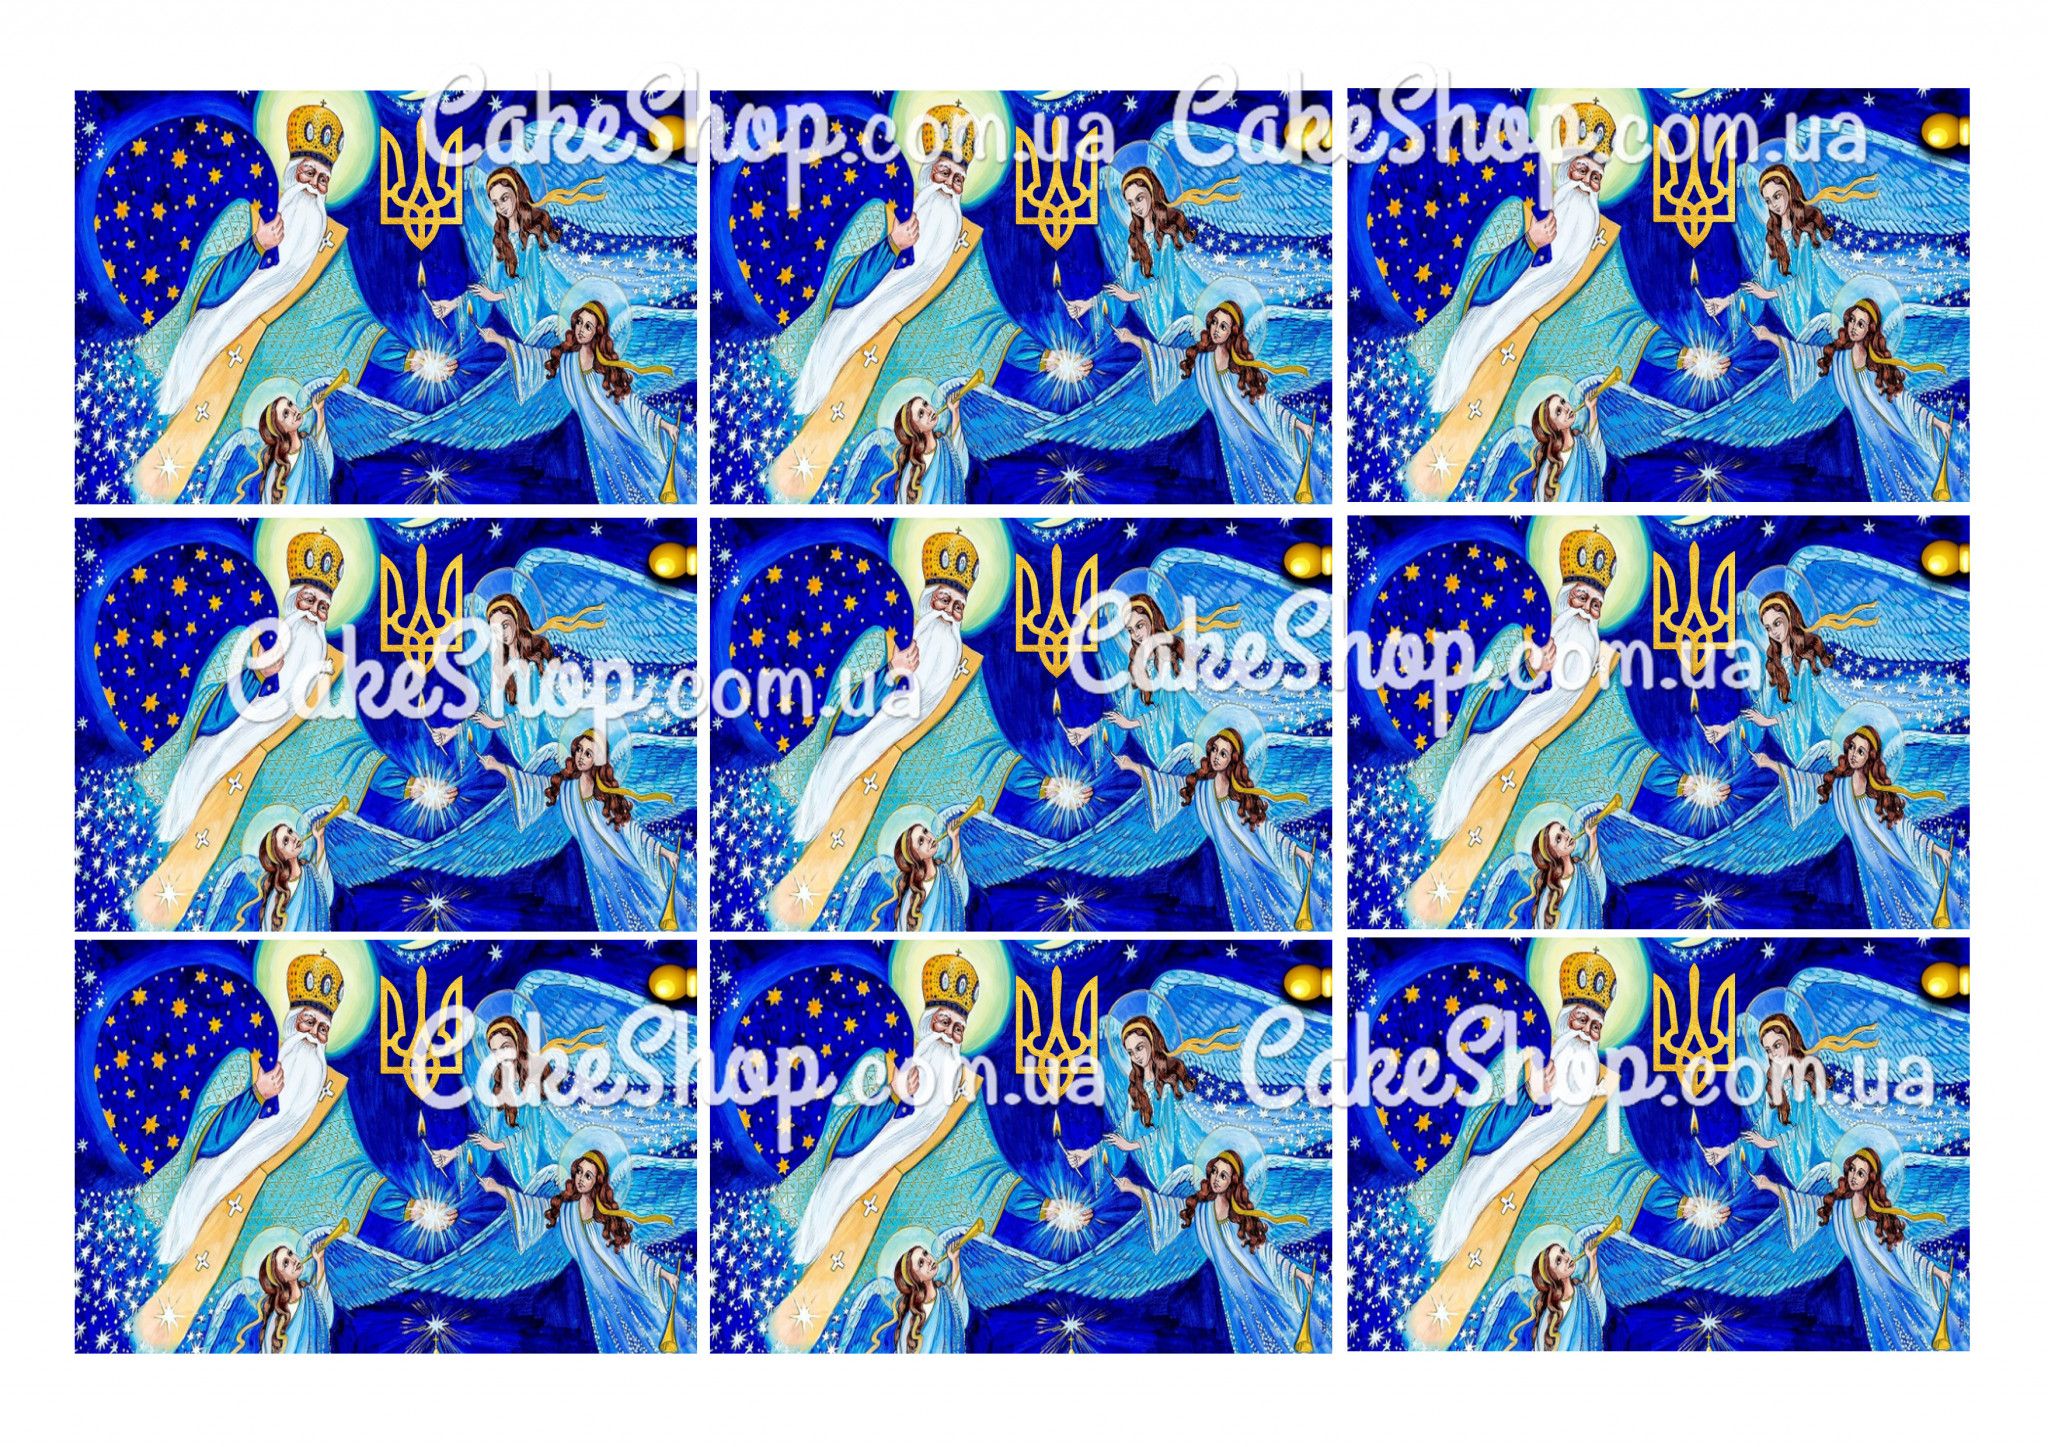 ⋗ Сахарная картинка Святий Миколай 7 купить в Украине ➛ CakeShop.com.ua, фото